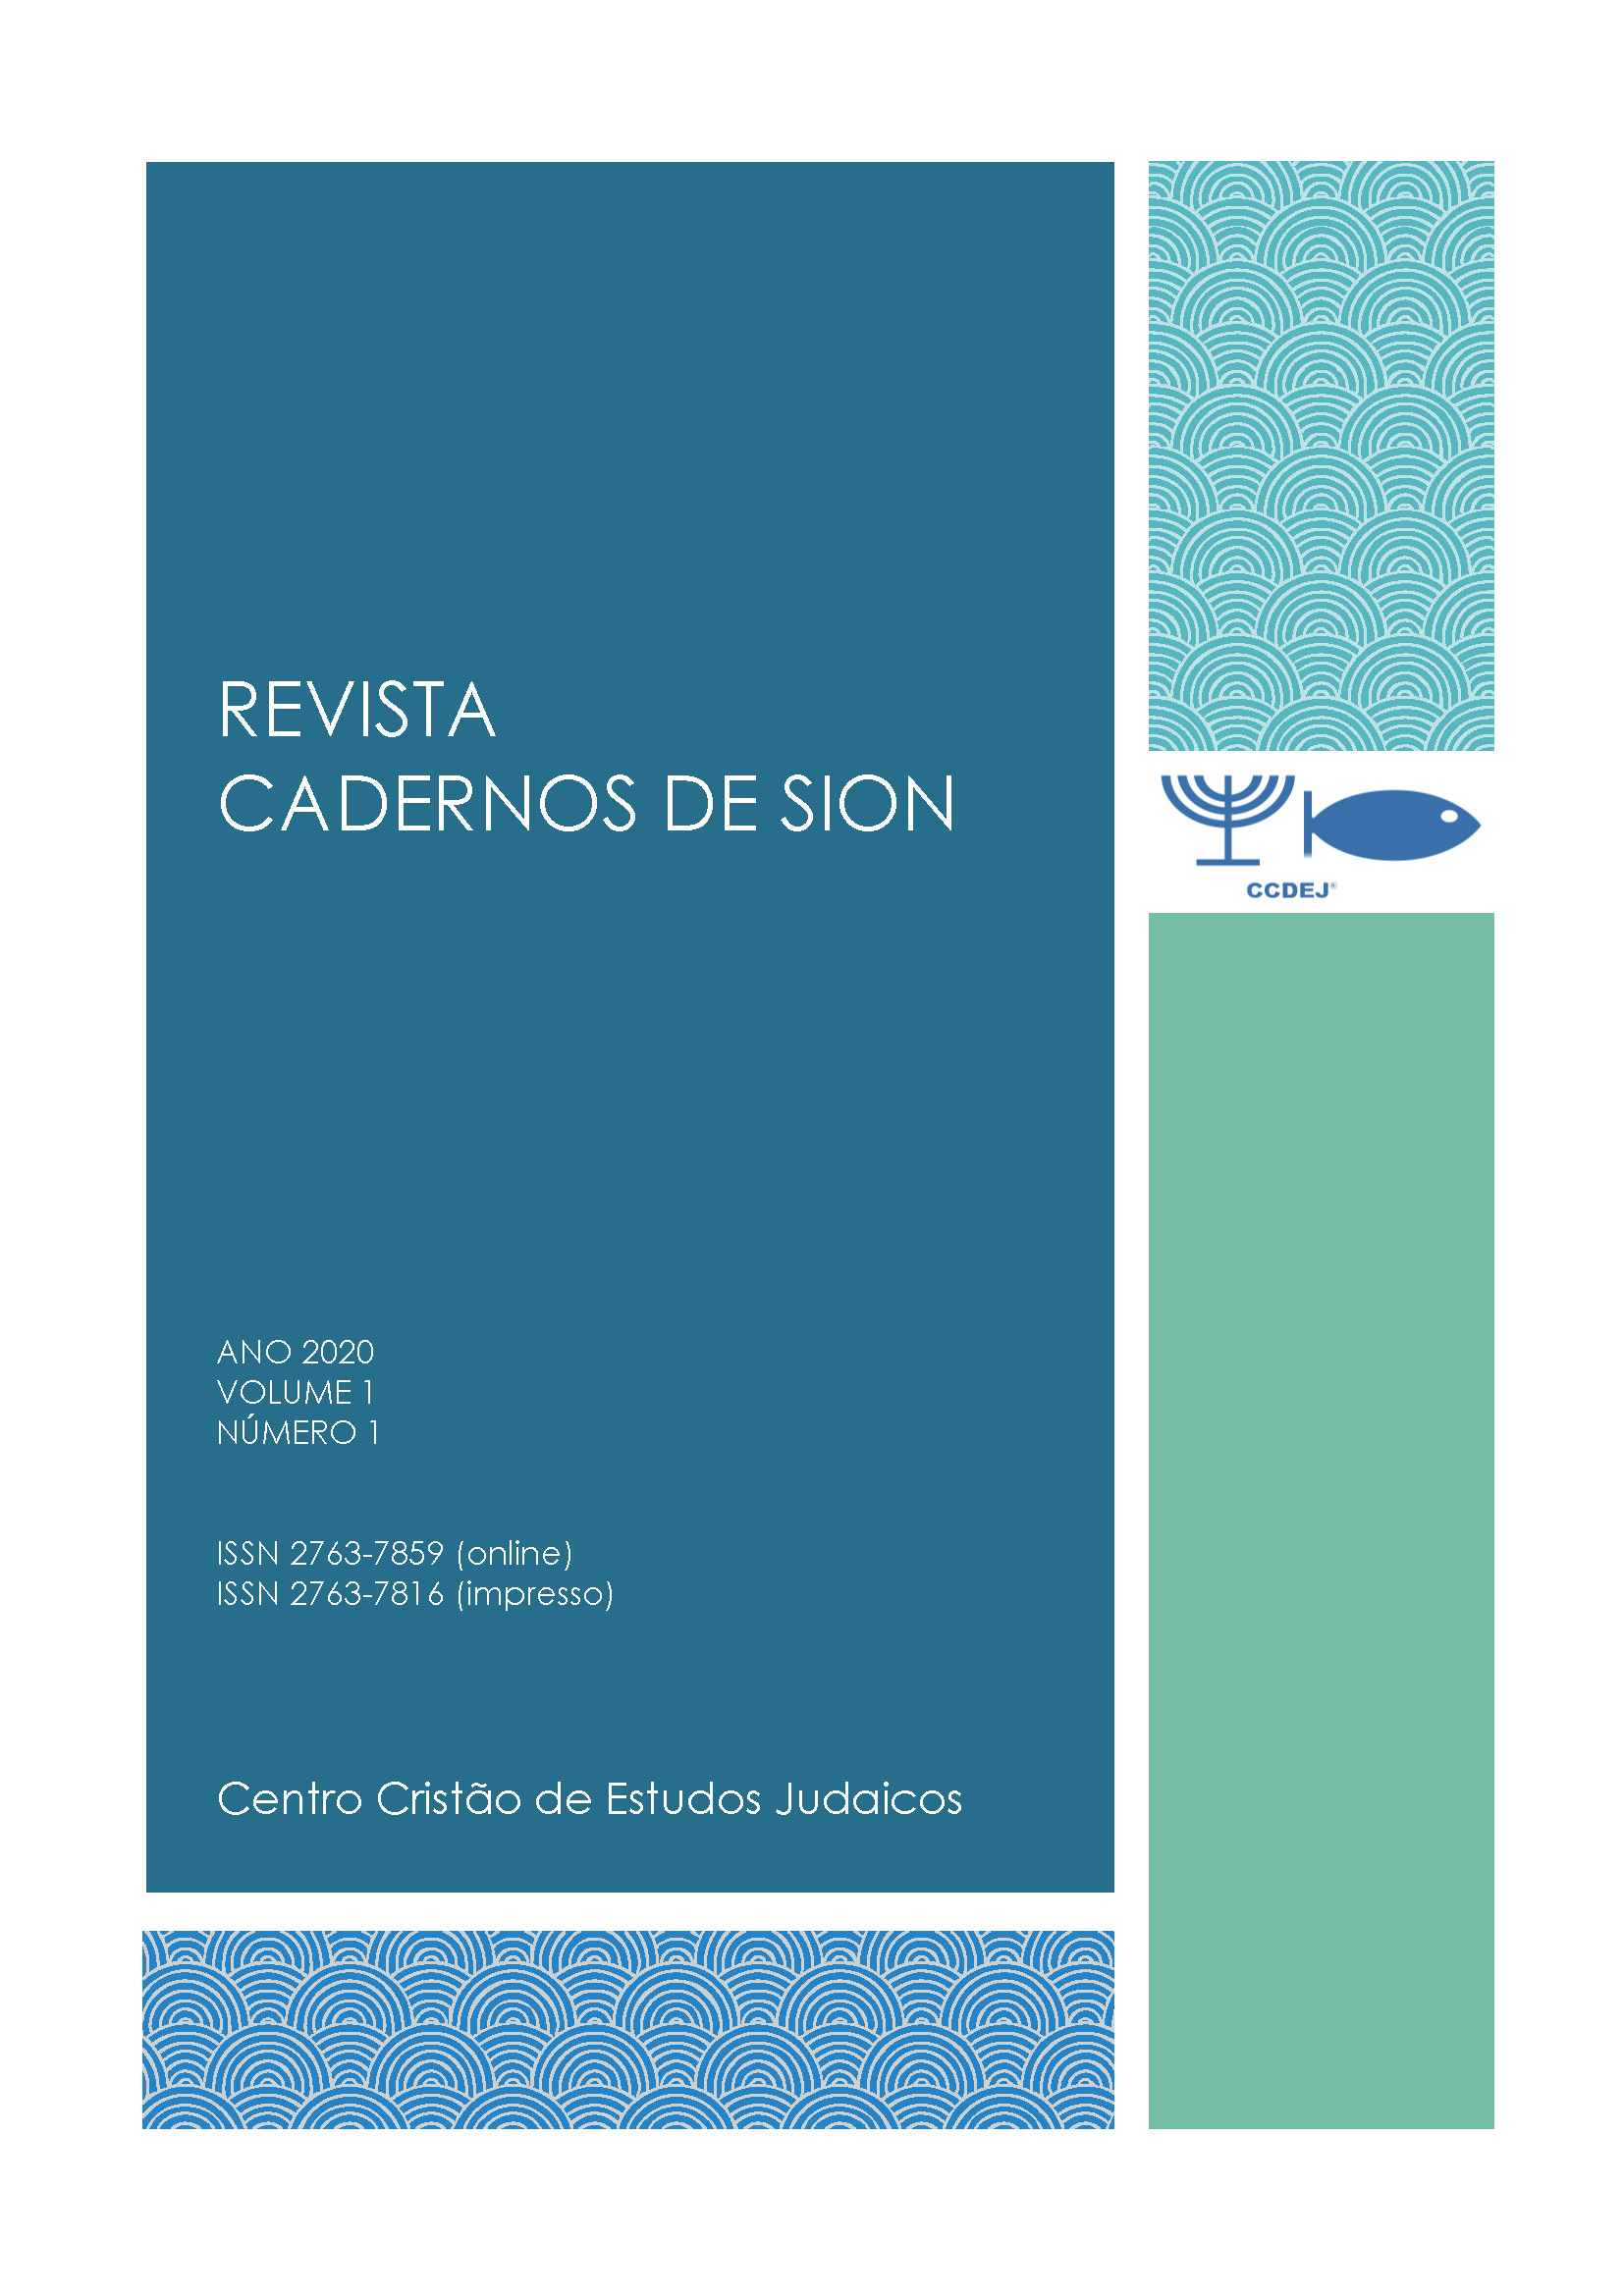 CAPA DA REVISTA CADERNOS DE SION, VOLUME 1, NÚMERO 1